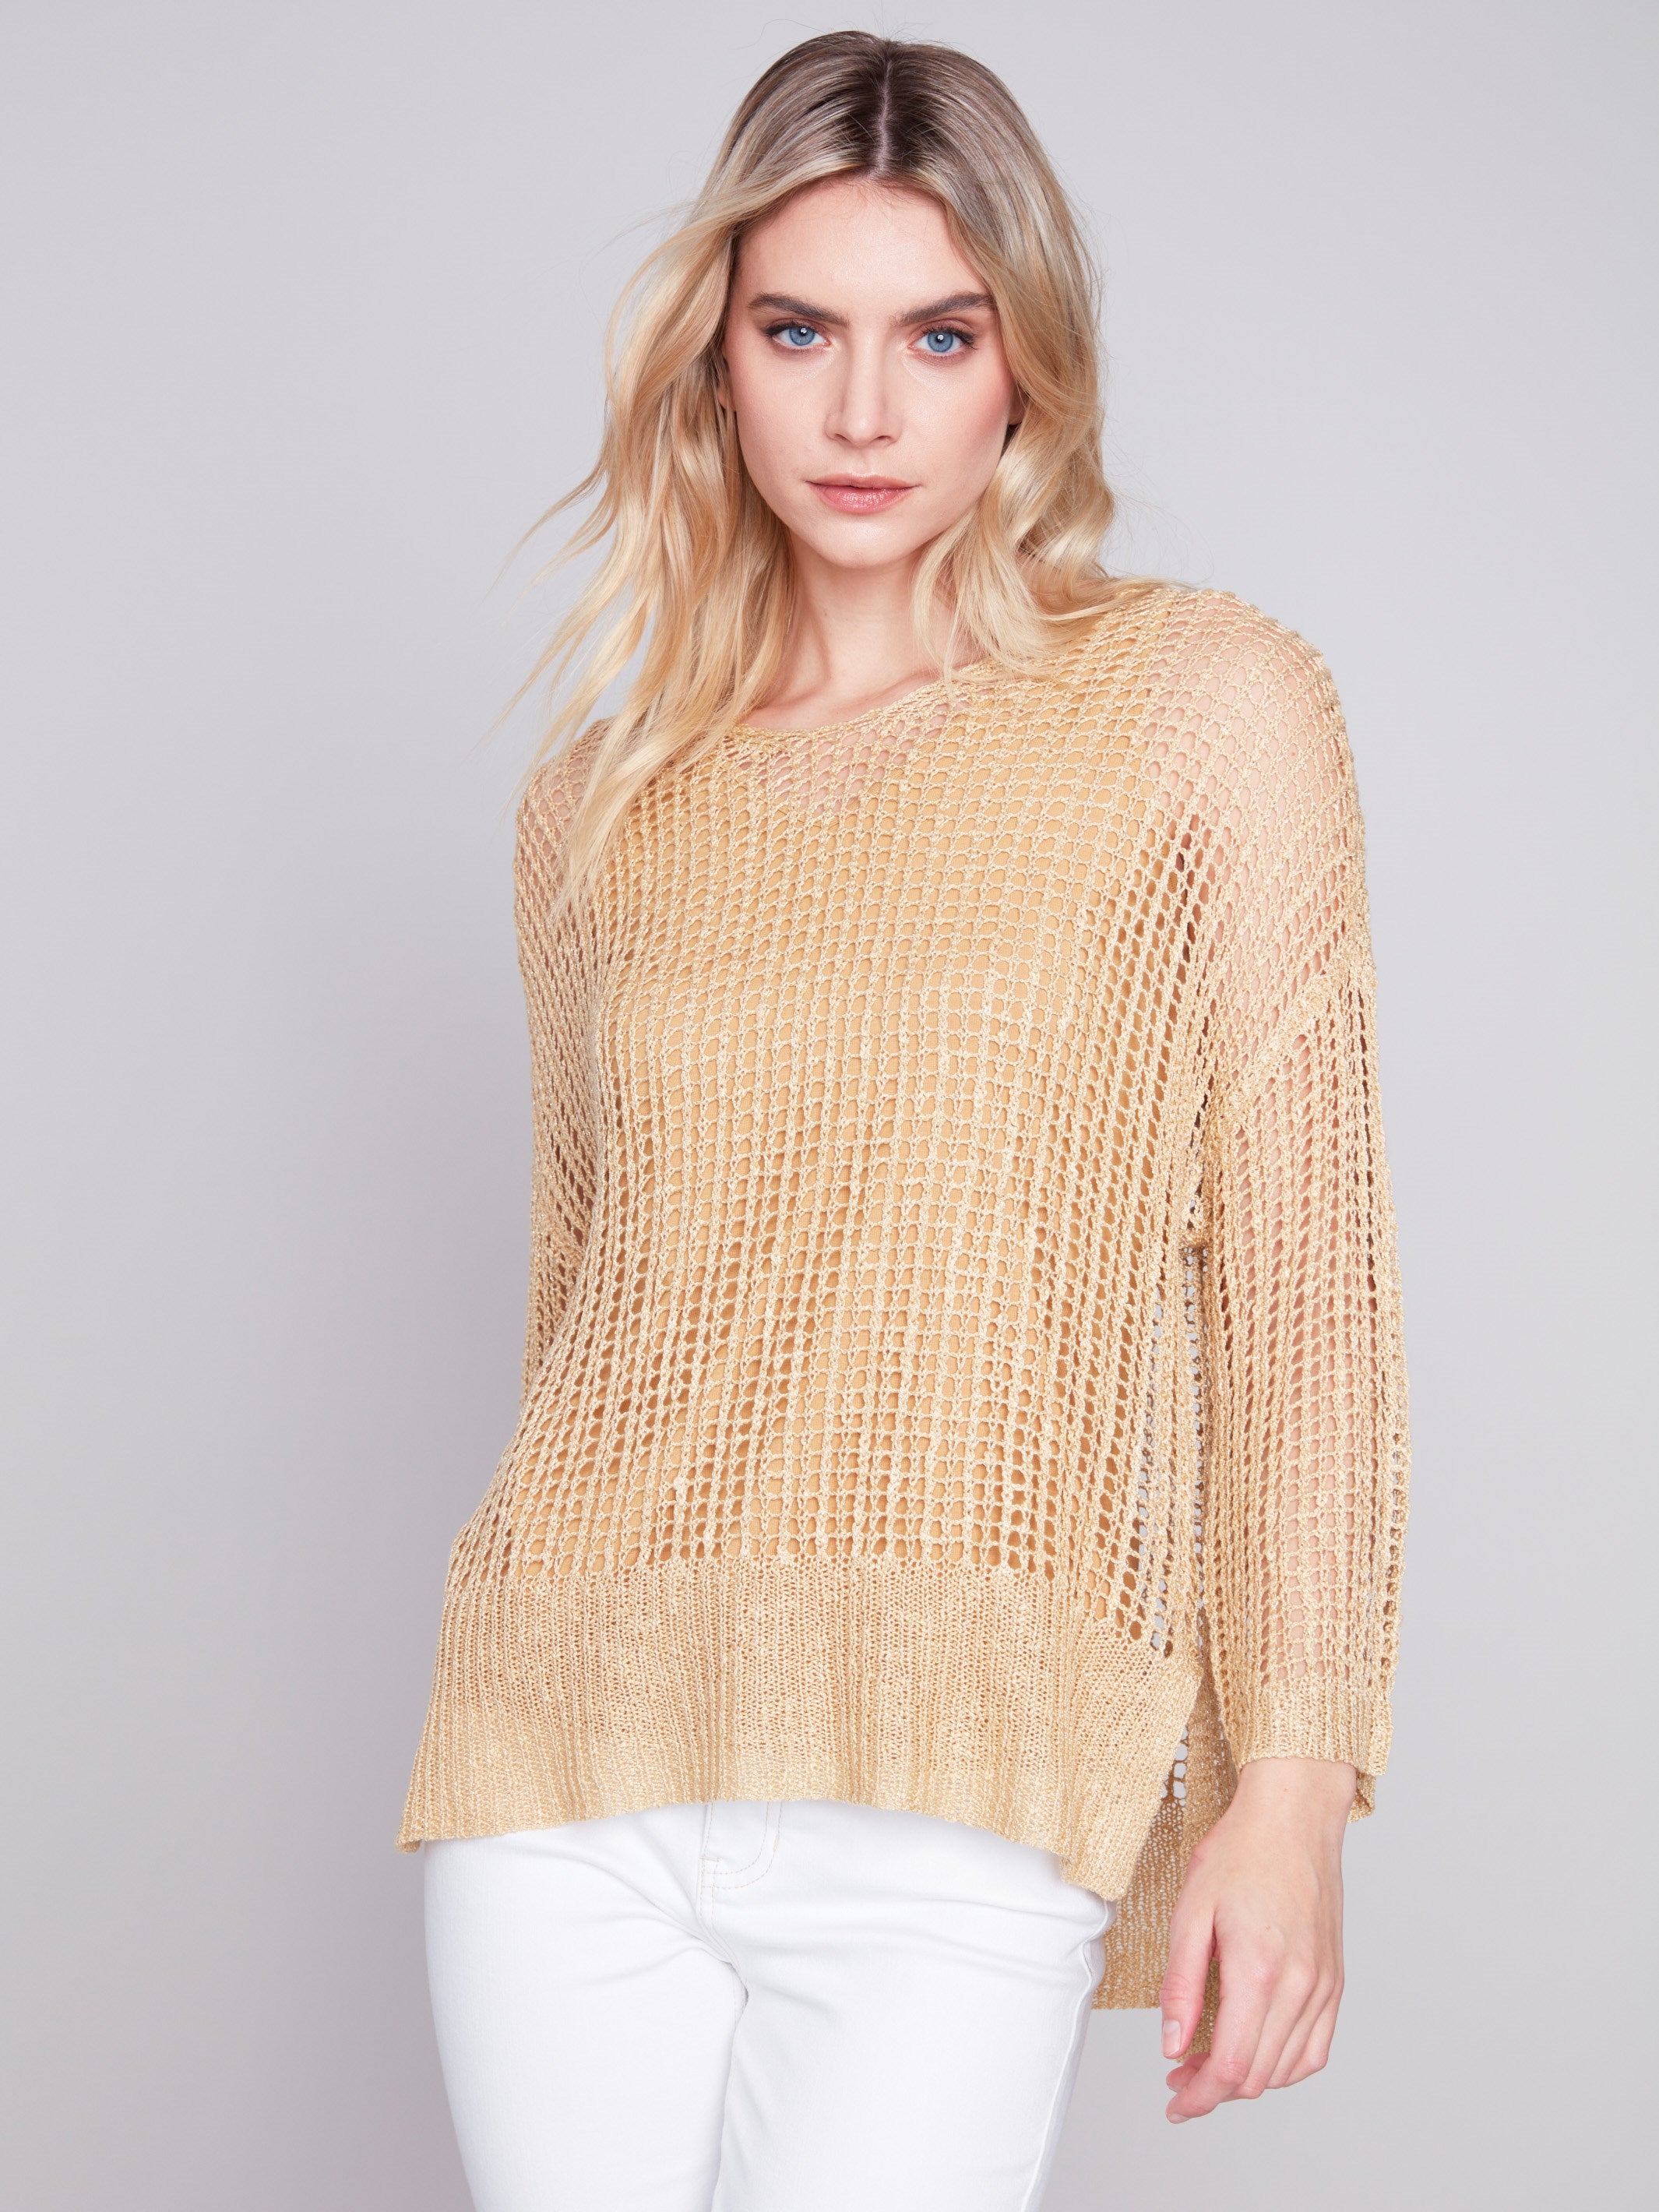 Charlie B Fishnet Crochet Sweater - Gold - Image 1